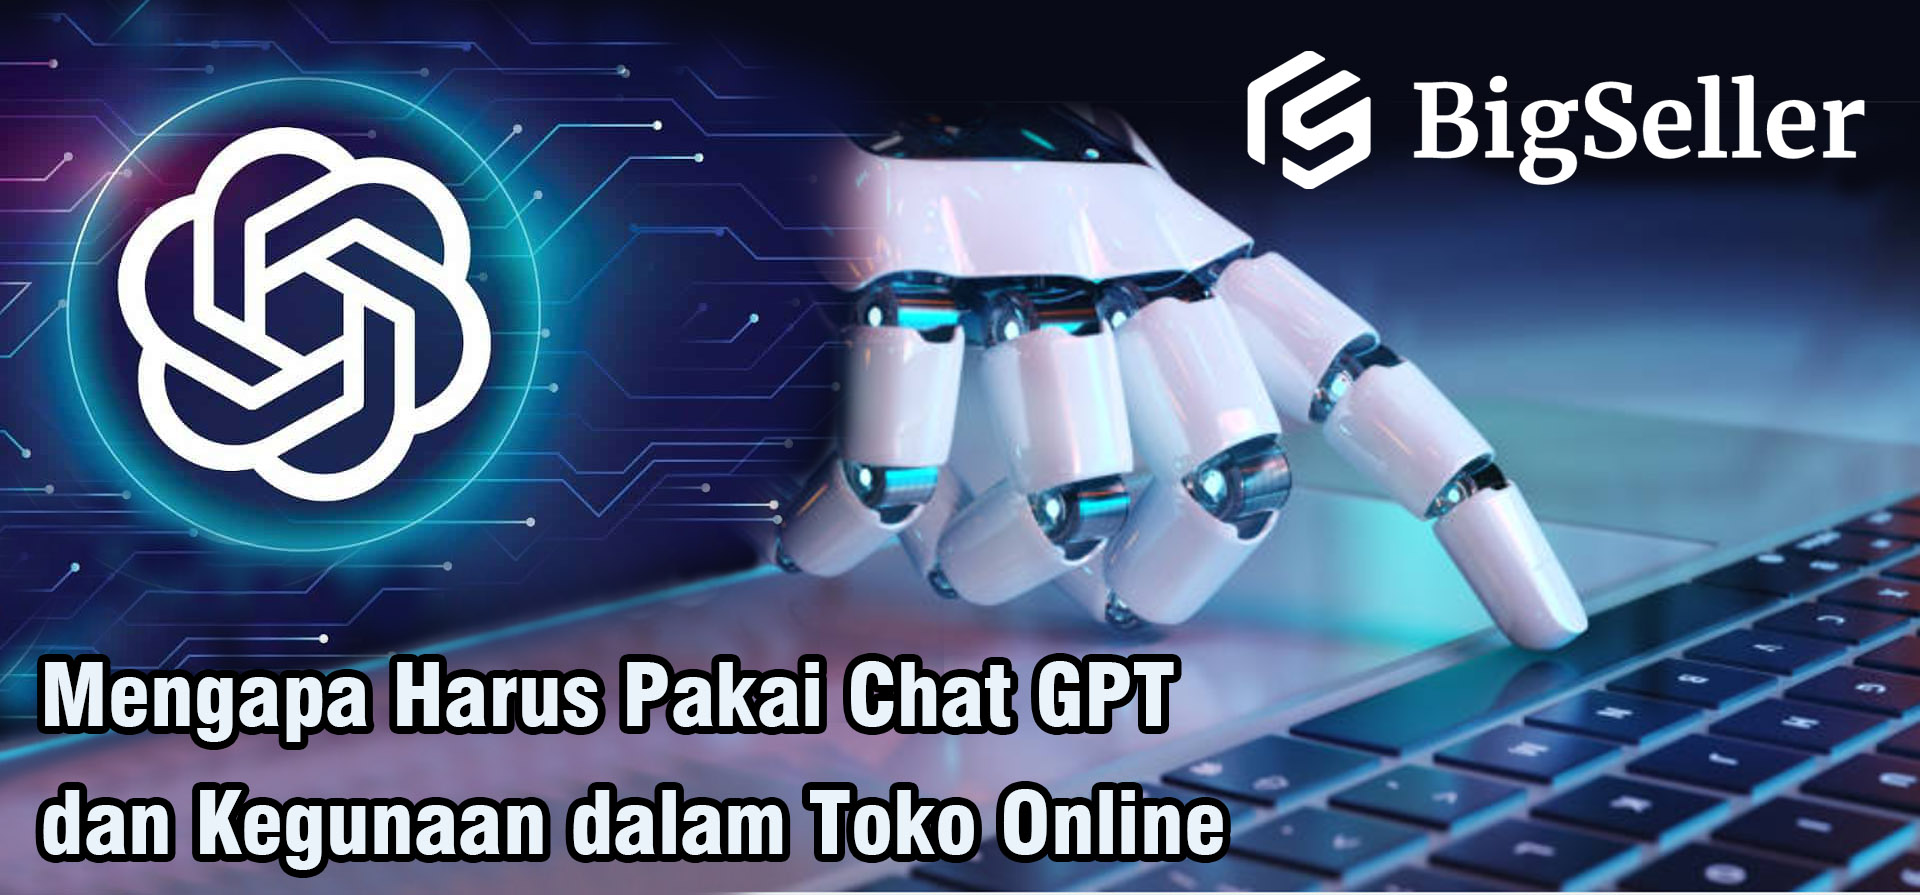 Mengapa Harus Pakai Chat GPT dan Kegunaan dalam Toko Online